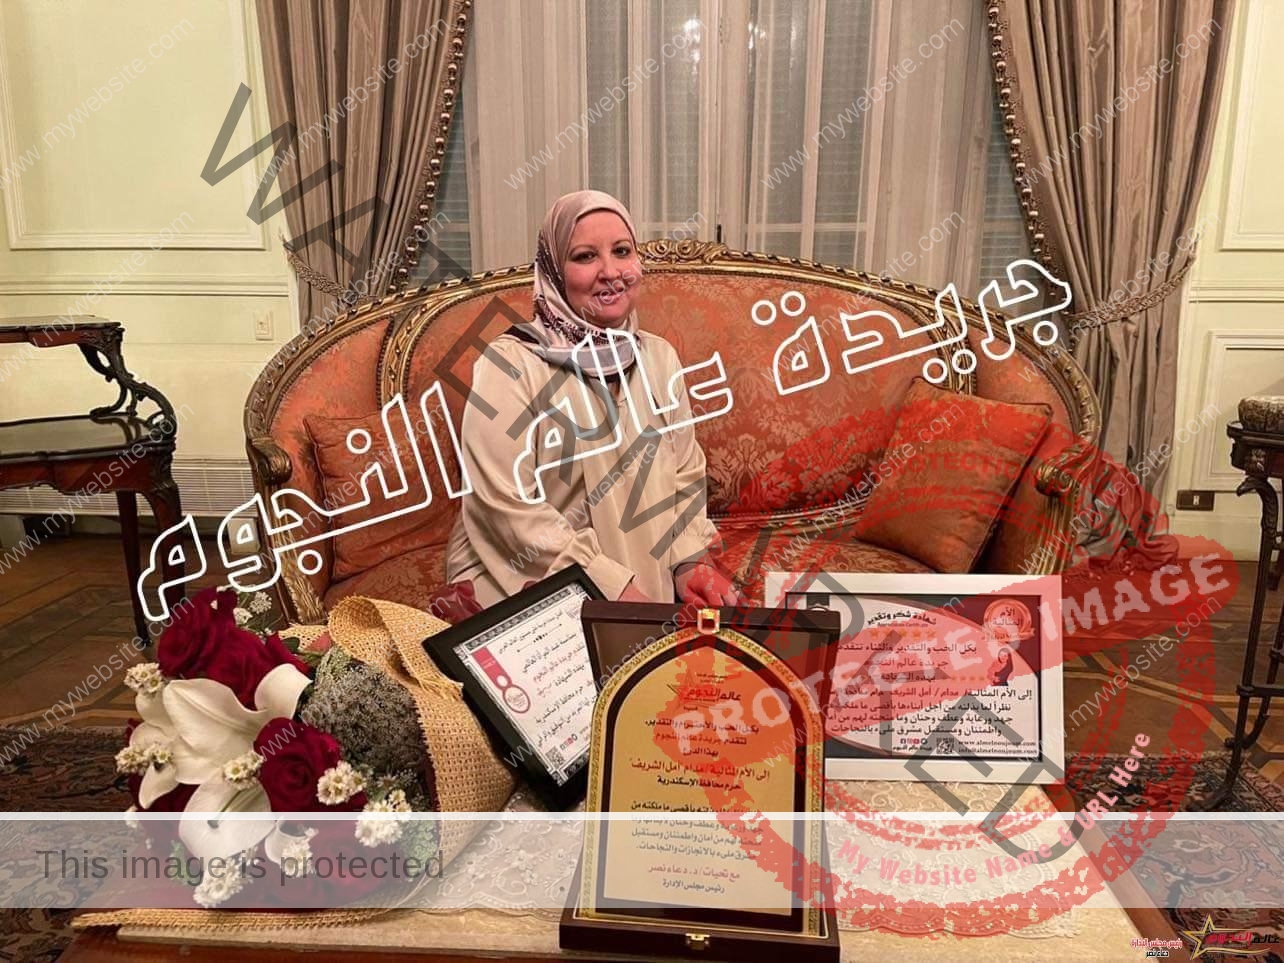 السيدة حرم محافظ الإسكندرية في تصريح حصري لجريدة عالم النجوم: " اتحدث مع السيد المحافظ كأي سيدة مصرية عن هموم وطنها وأحلامها لمصر " 